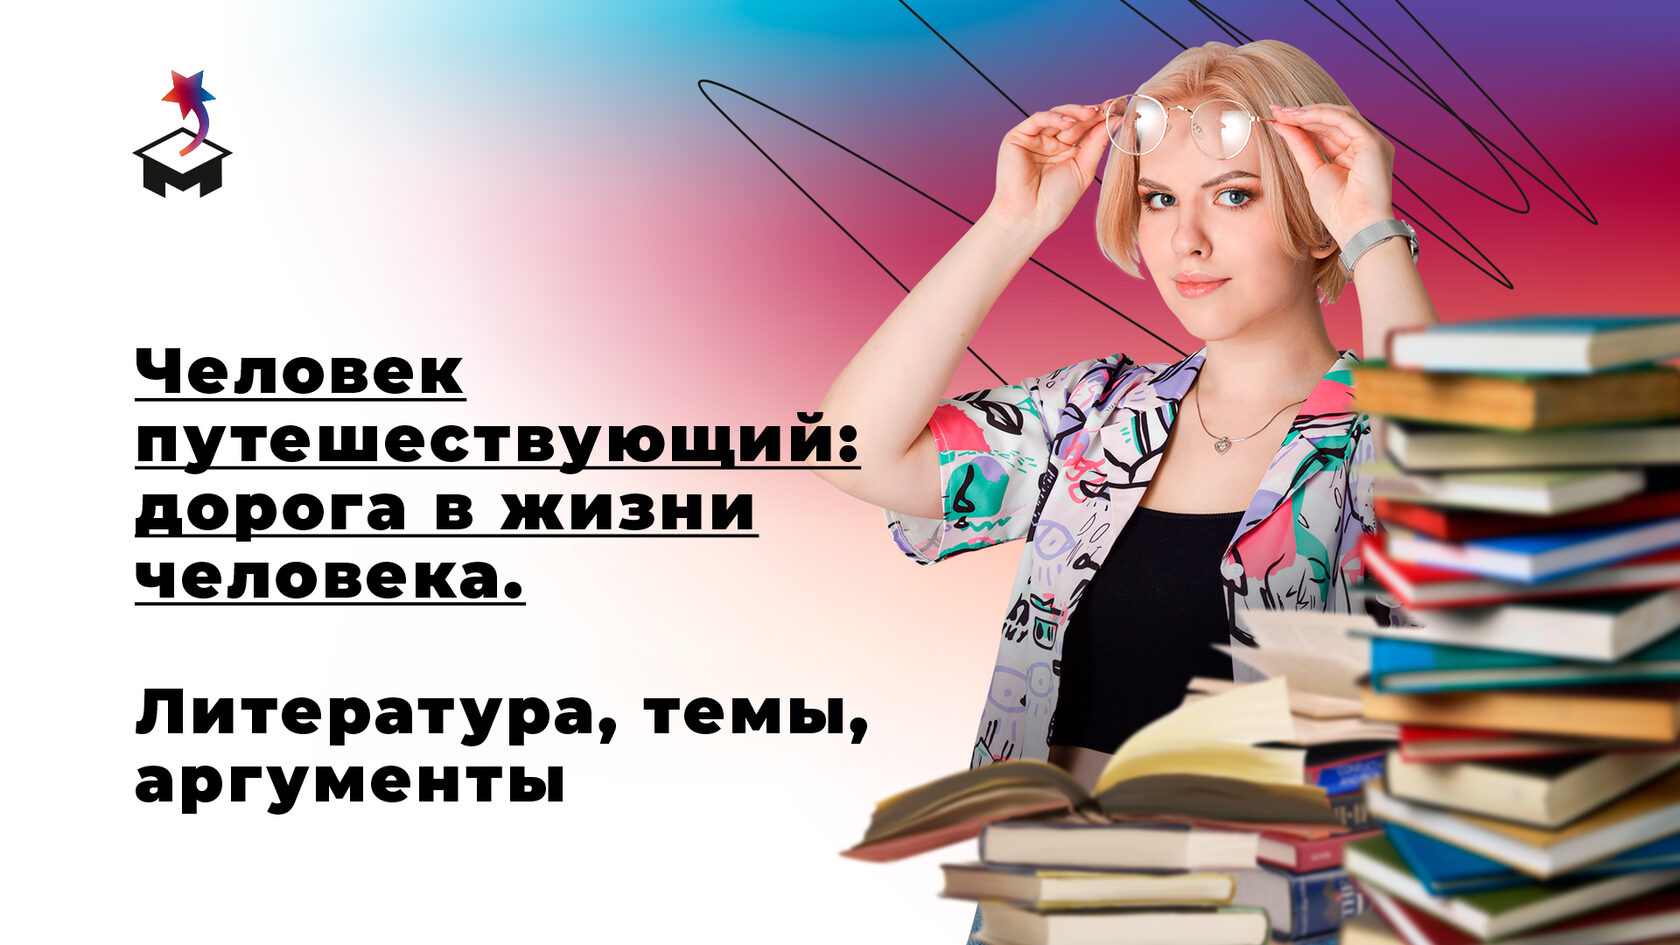 Анастасия Разумовская и книги